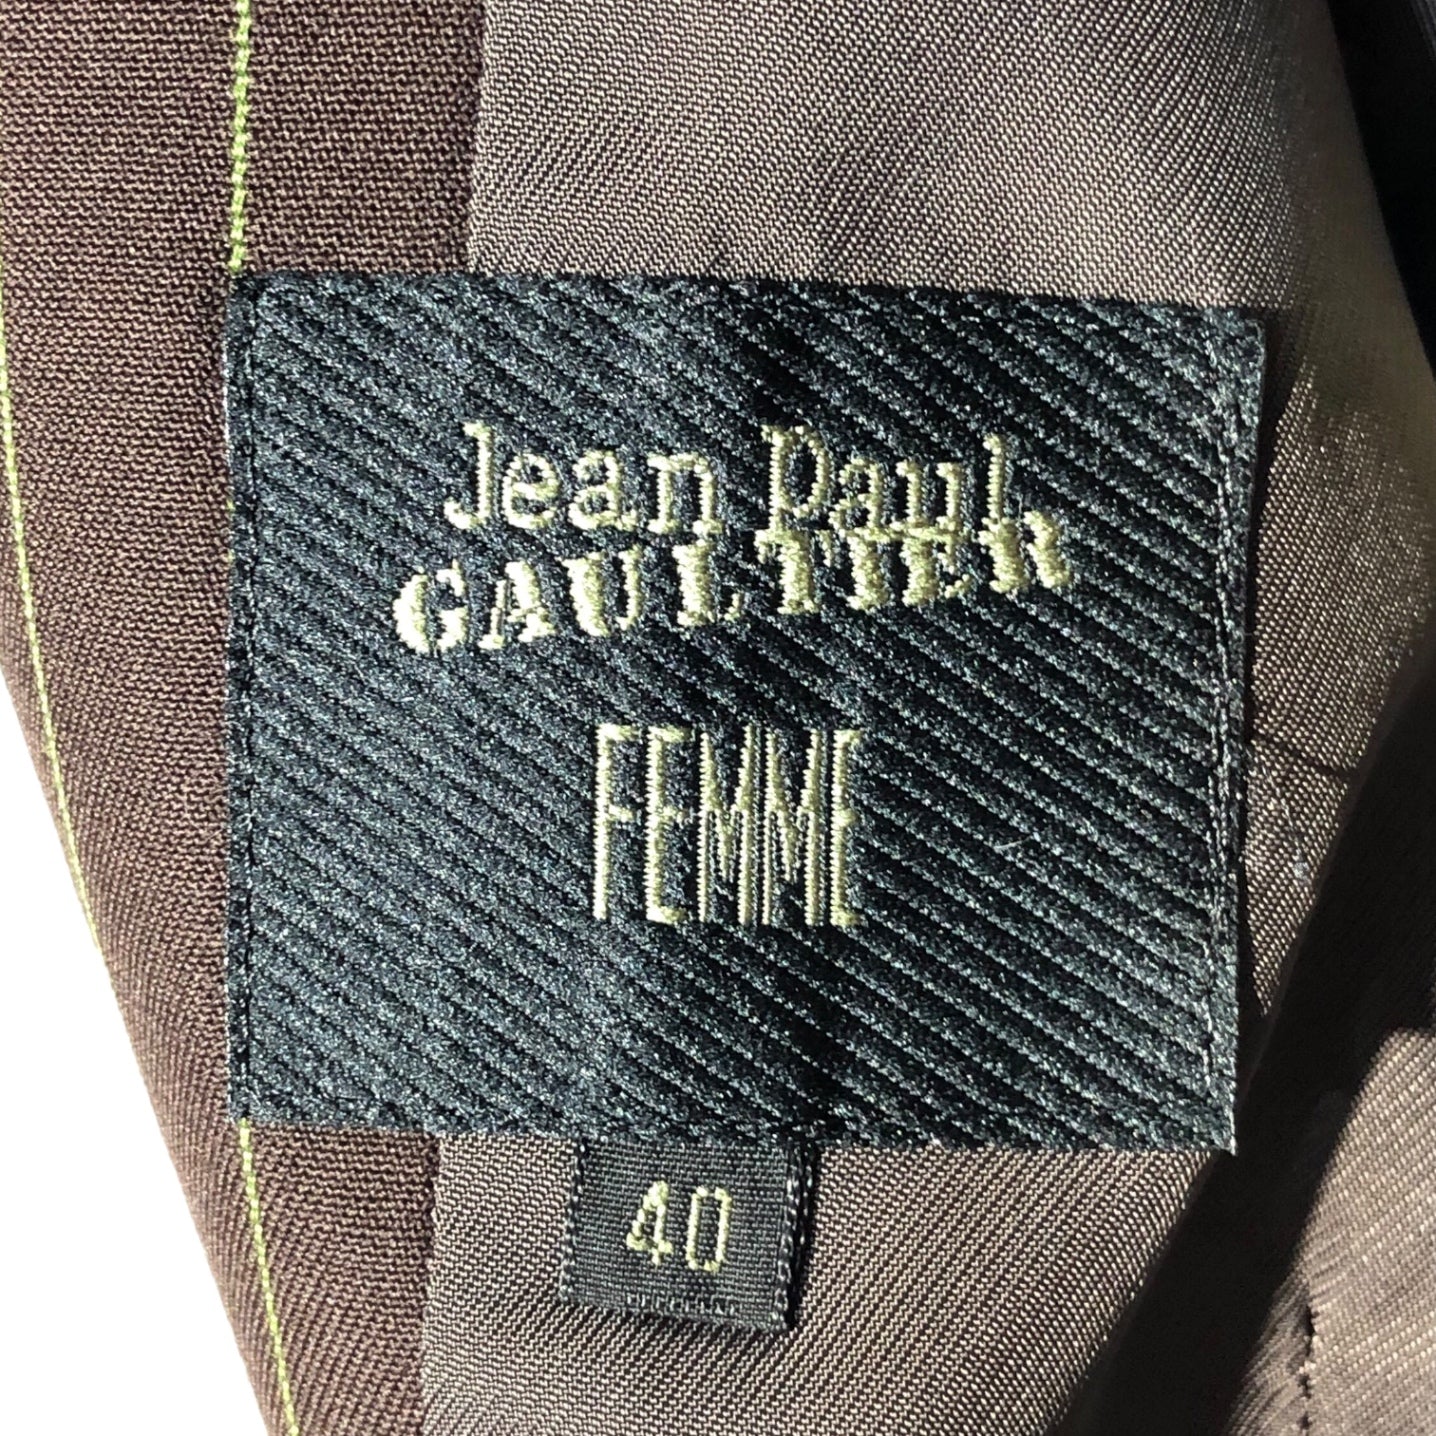 Jean Paul GAULTIER FEMME(ジャンポールゴルチエファム) 90's striped double jacket setup ストライプ ダブル ジャケット セットアップ 40(L程度) ブラウン スラックス パンツ テーラード スーツ